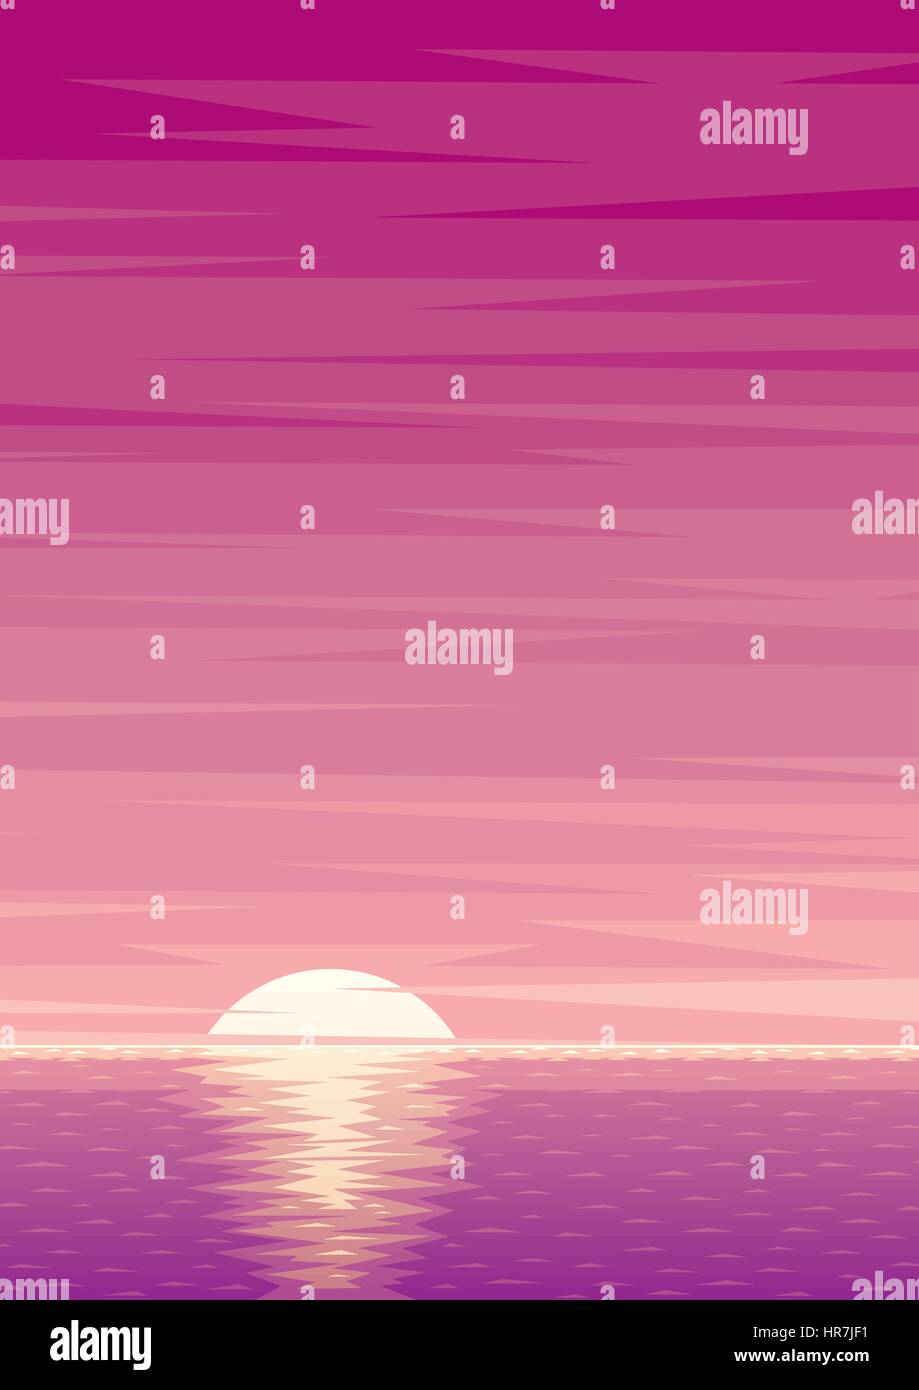 Cartoon Sfondo oceano con sunrise e copia dello spazio. Illustrazione Vettoriale